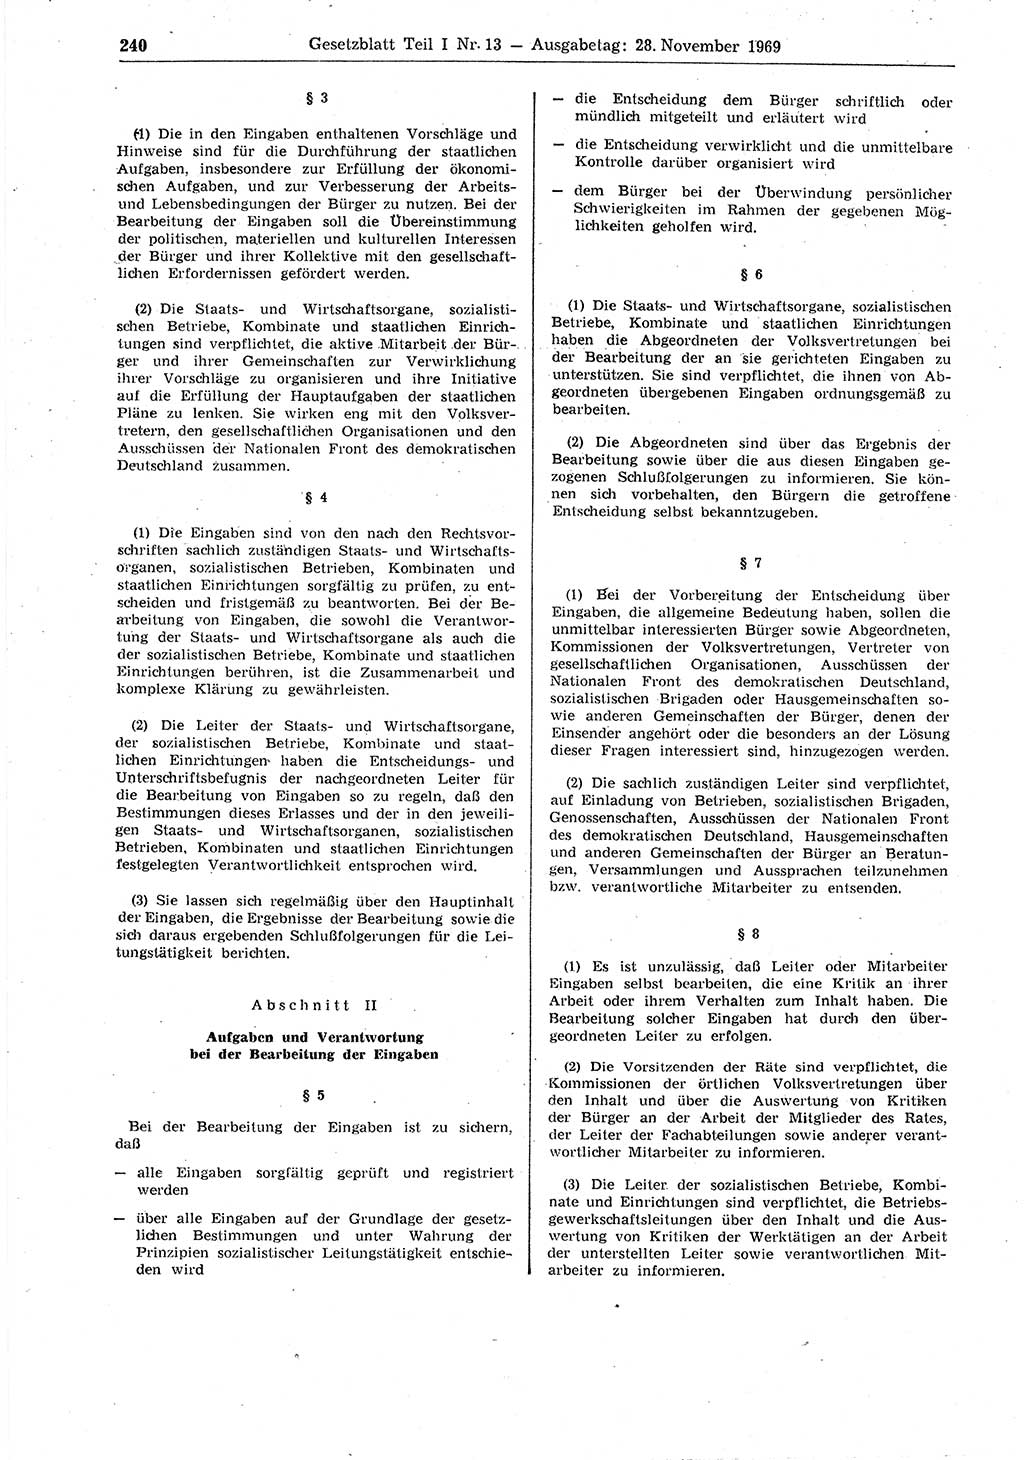 Gesetzblatt (GBl.) der Deutschen Demokratischen Republik (DDR) Teil Ⅰ 1969, Seite 240 (GBl. DDR Ⅰ 1969, S. 240)